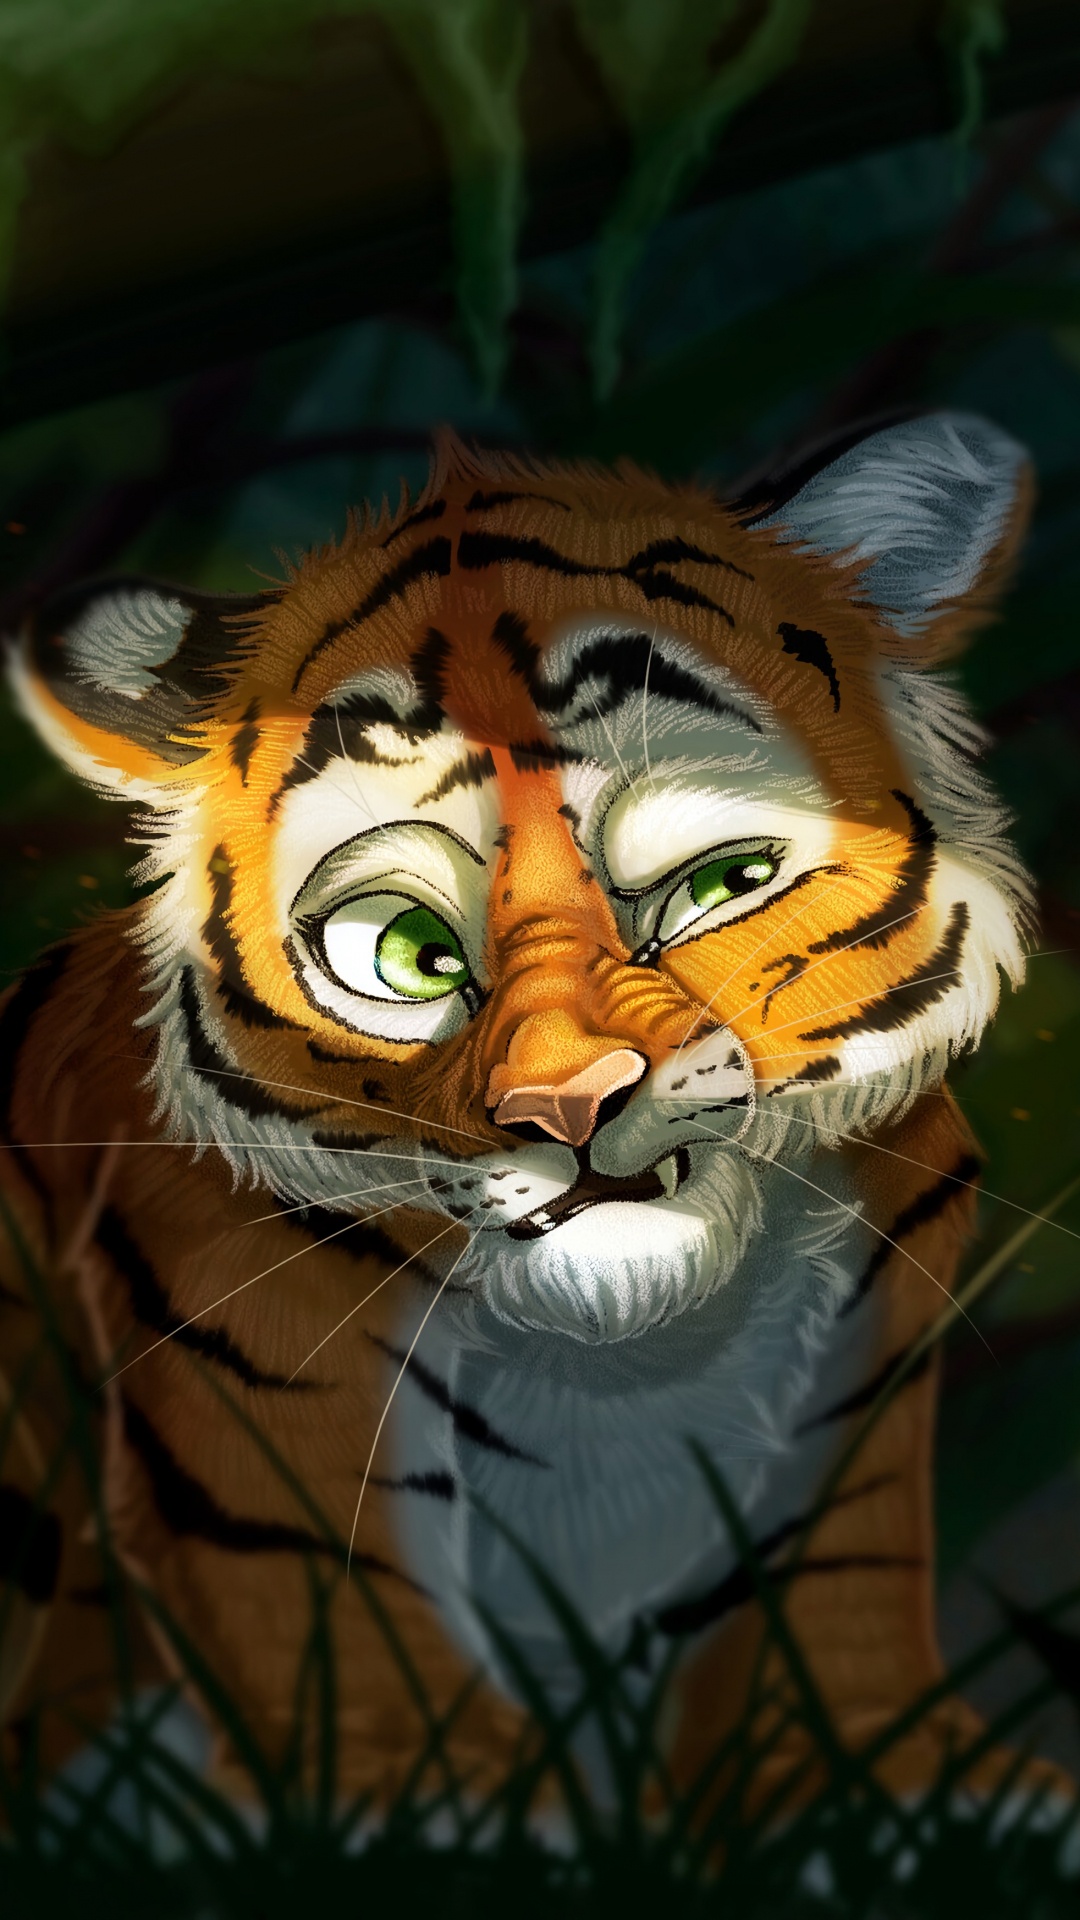 老虎, 艺术, 孟加拉虎, 野生动物, 猫科 壁纸 1080x1920 允许